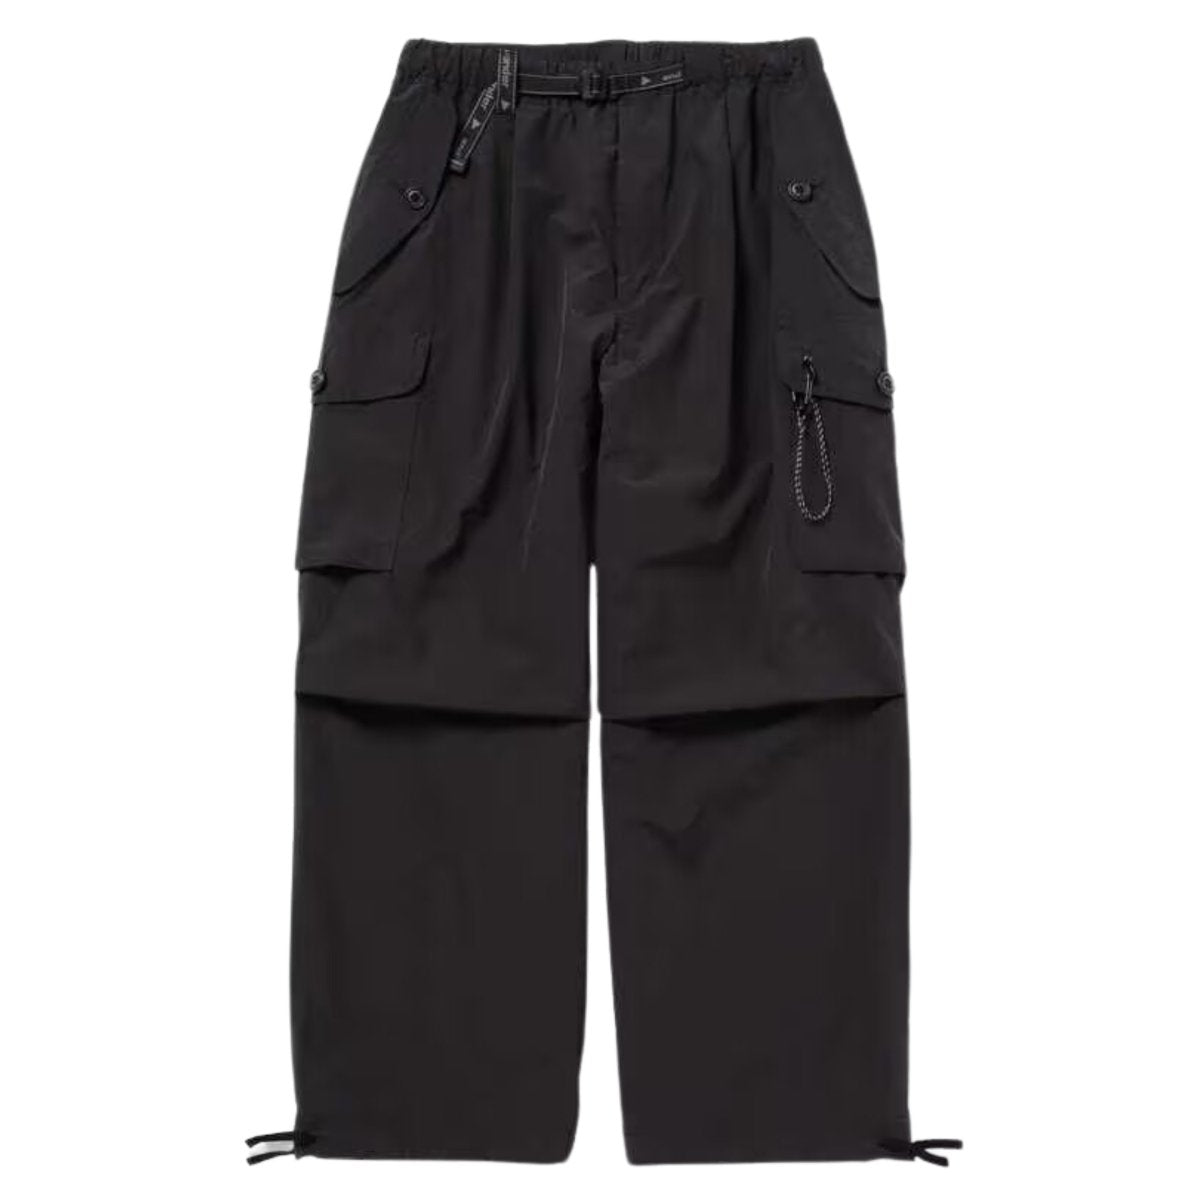 大海物語and wander / oversized cargo pants 2 パンツ